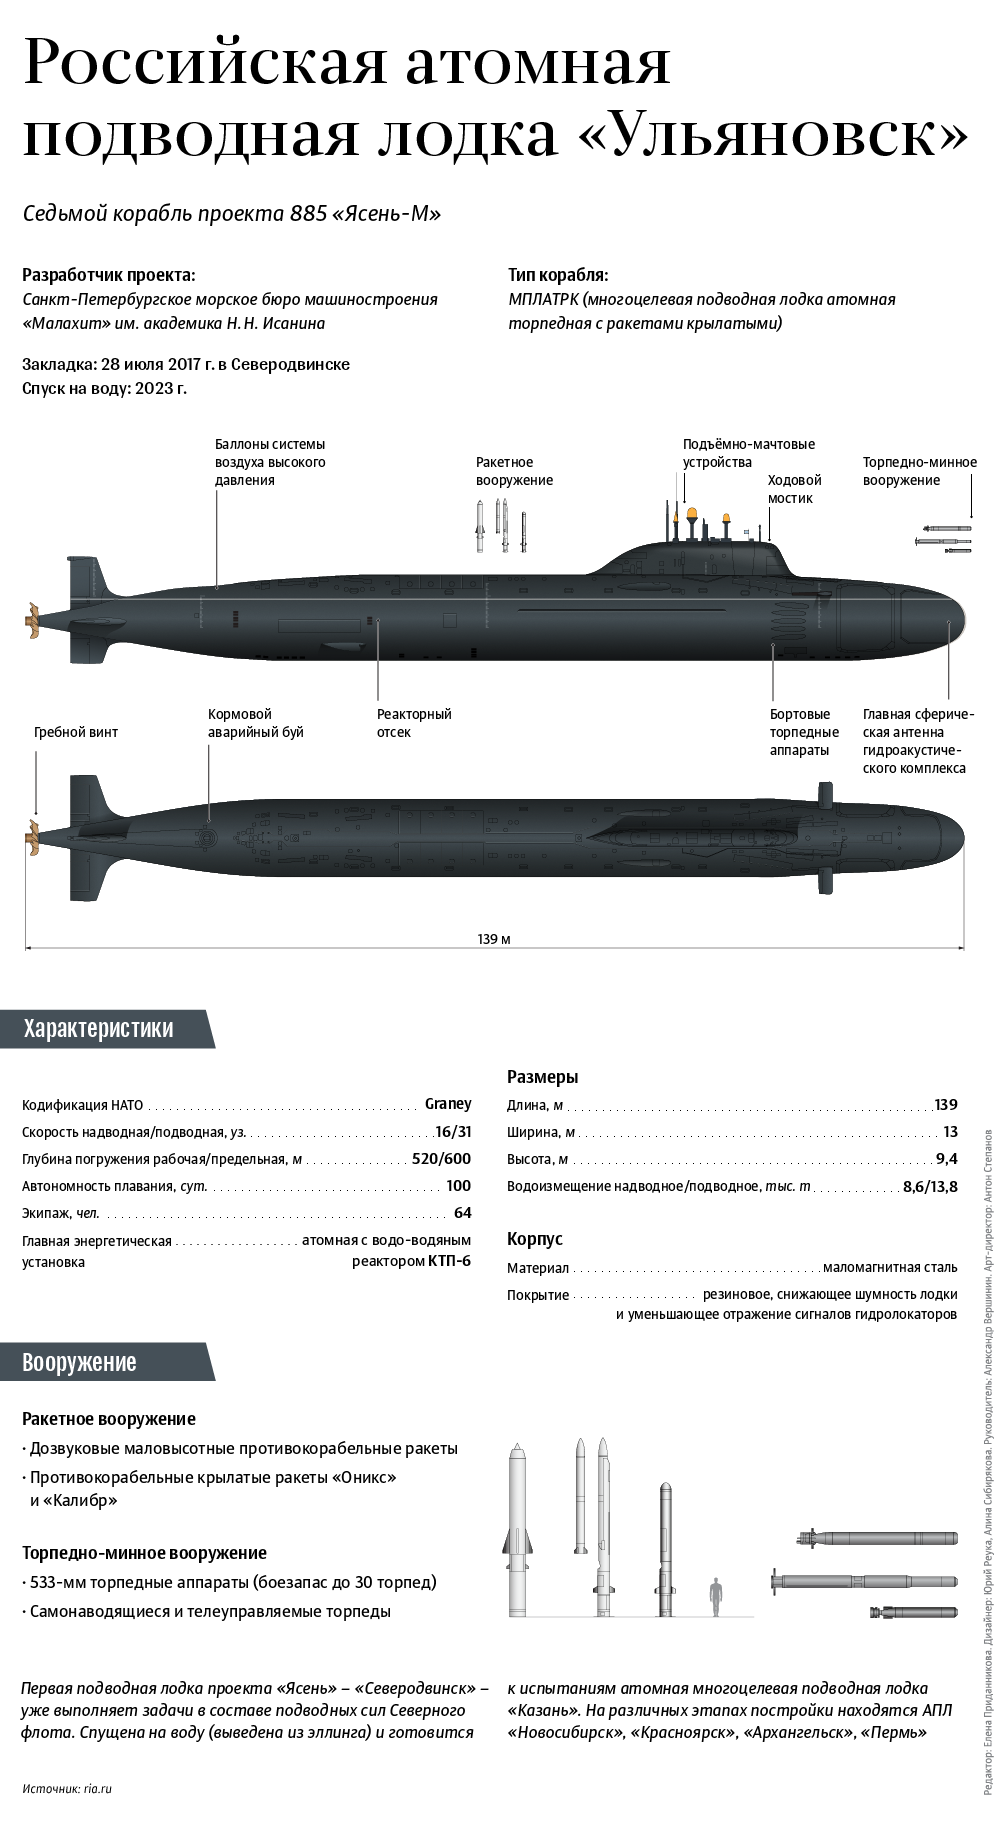 Российская атомная подводная лодка Ульяновск